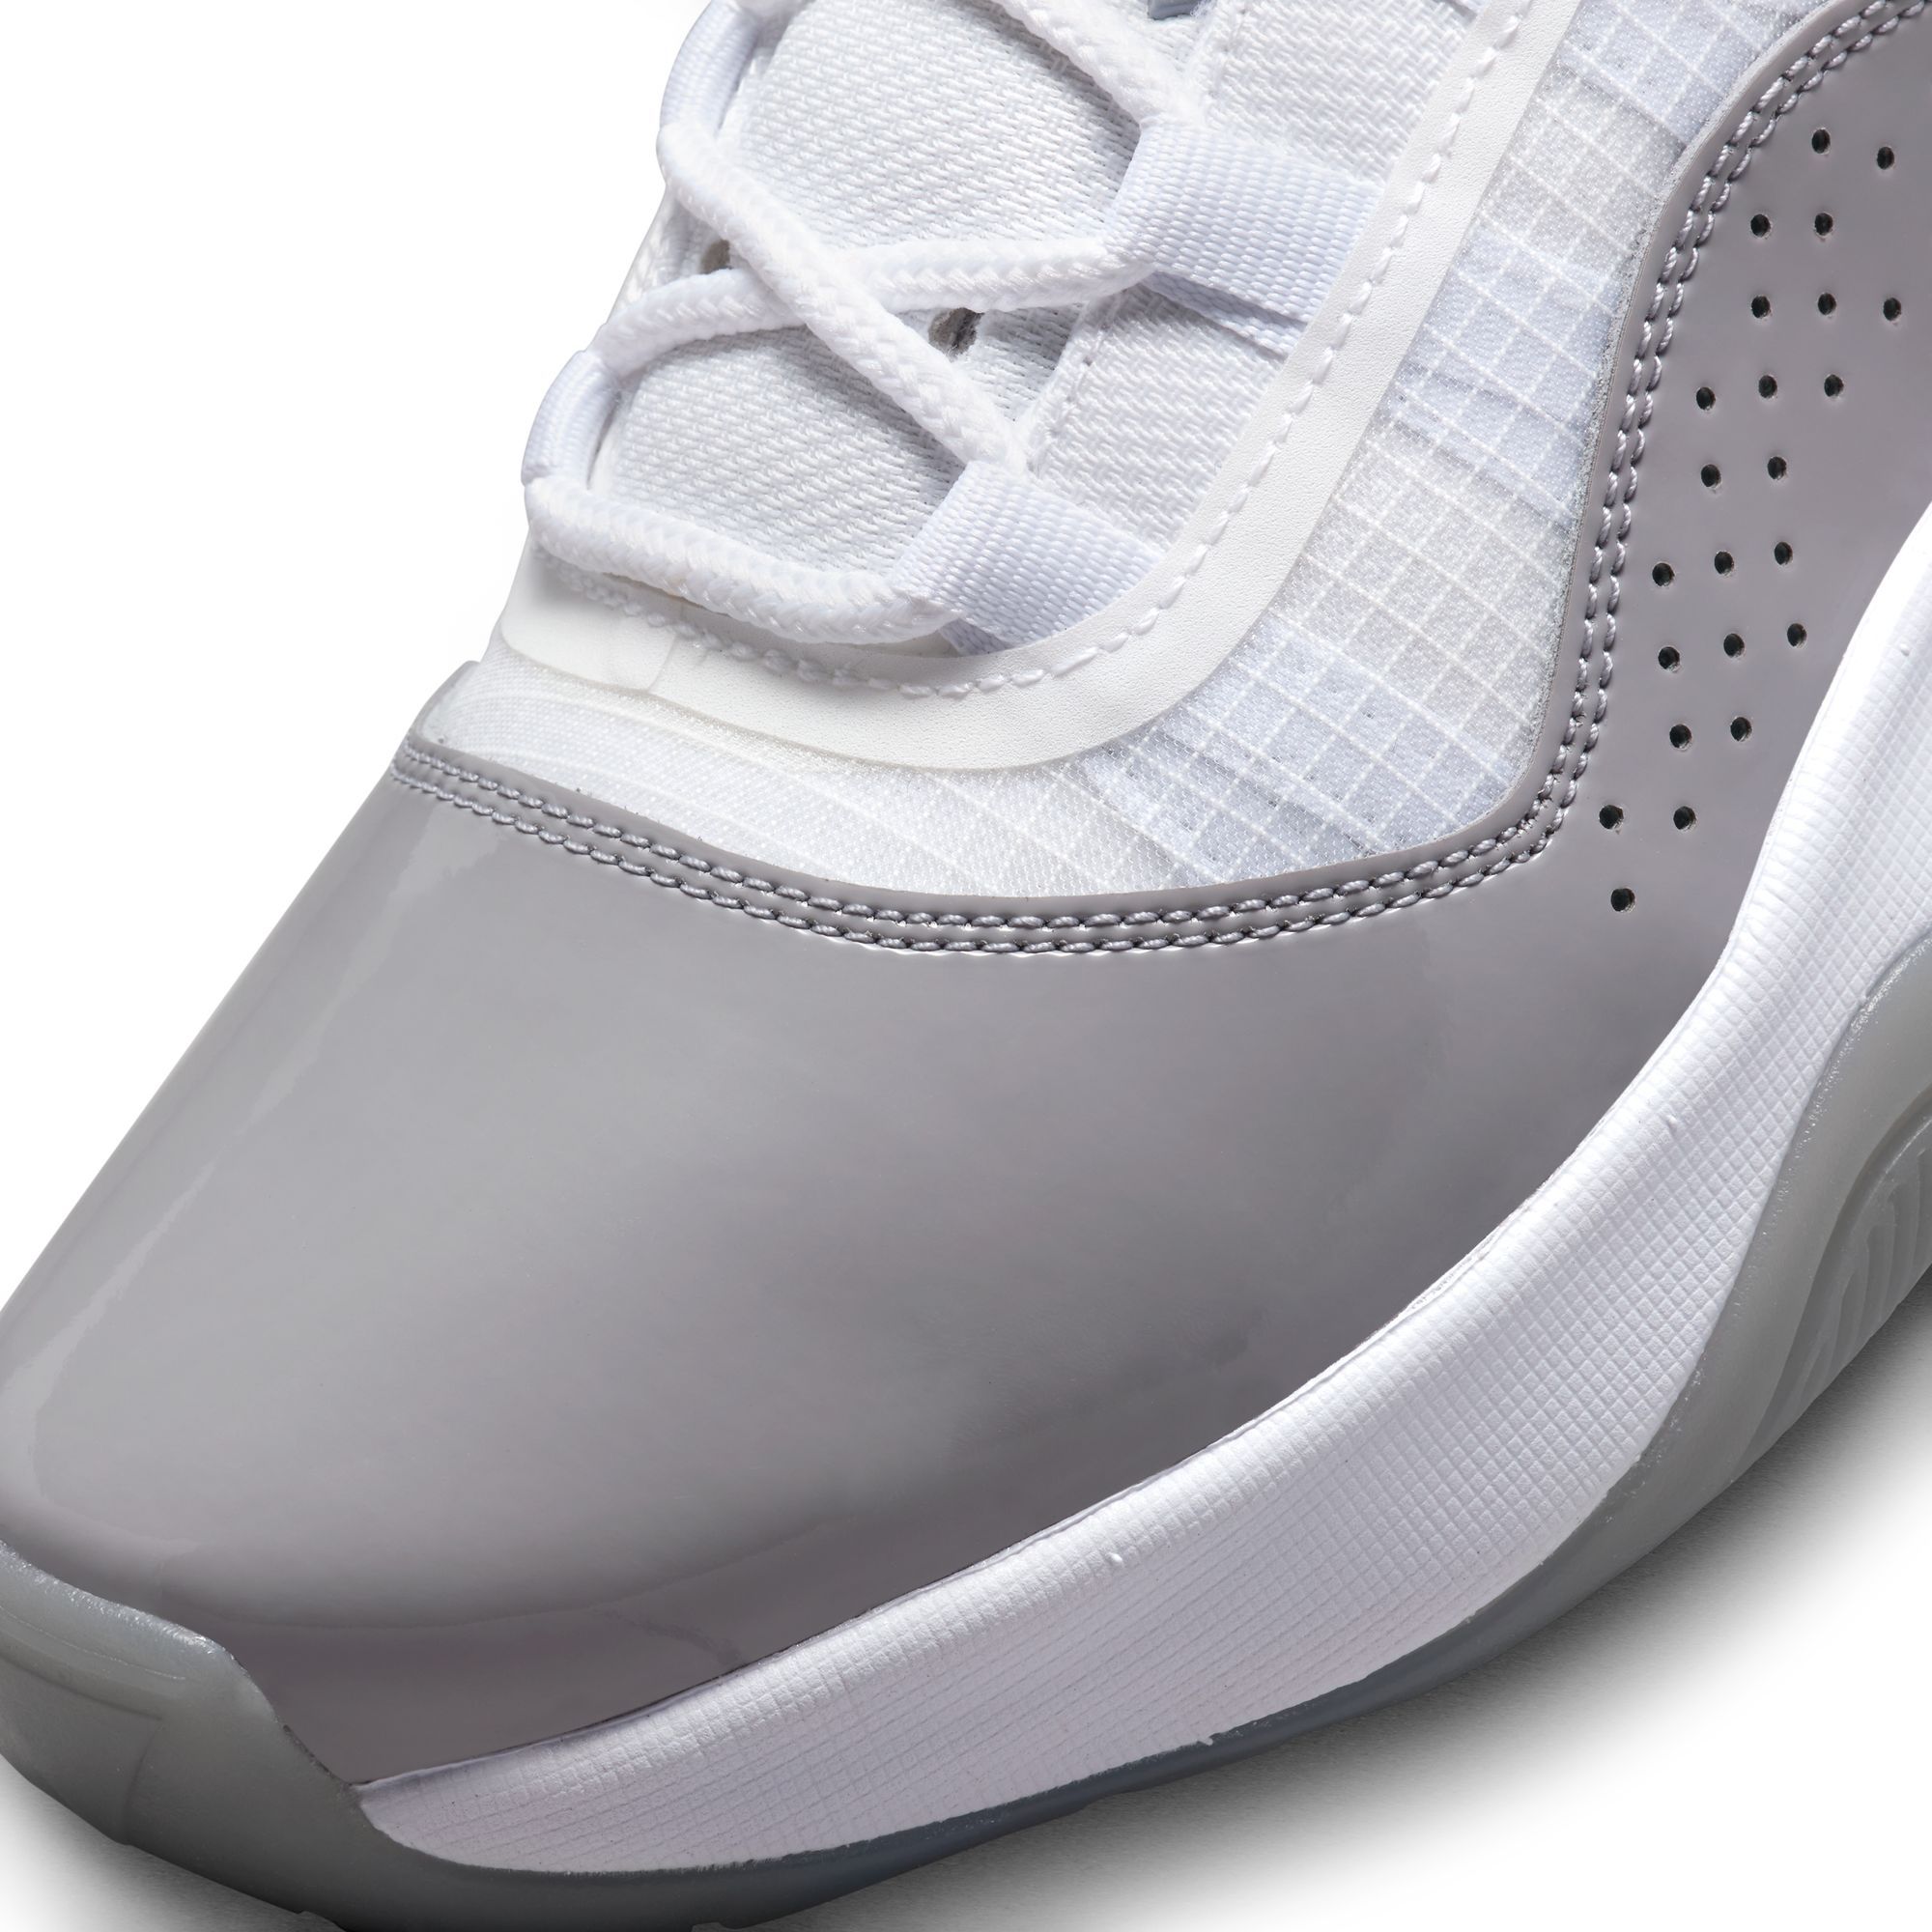 Nike Air Jordan 11 CMFT Low White Black Metallic Silver Women's Sizes  DV2629-001